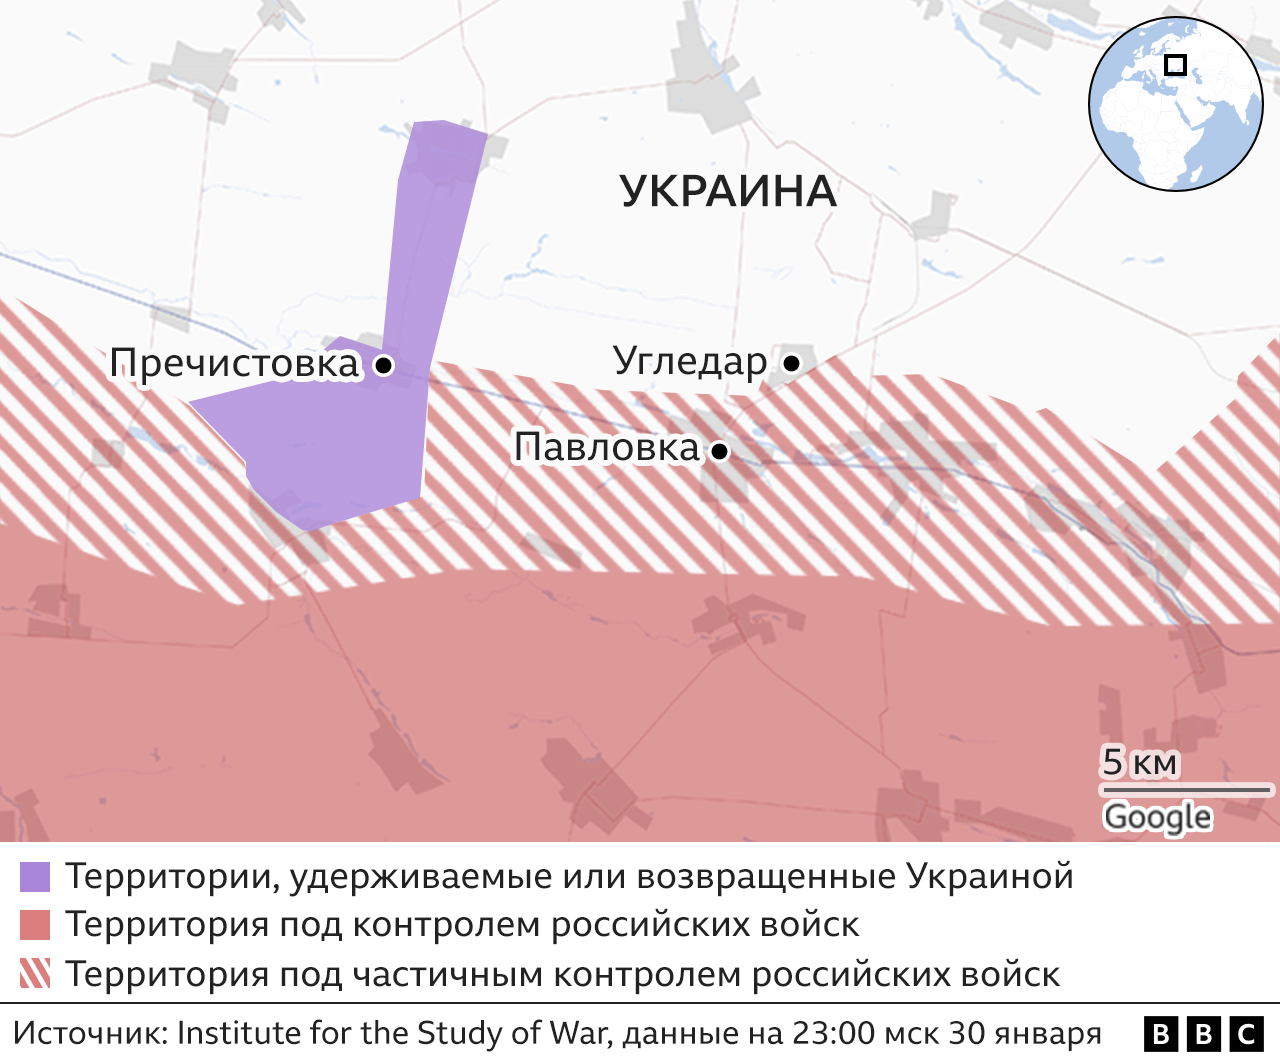 Россия усиливает атаки в Донецкой области. Возможно, она готовит новоенаправление для удара - BBC News Русская служба